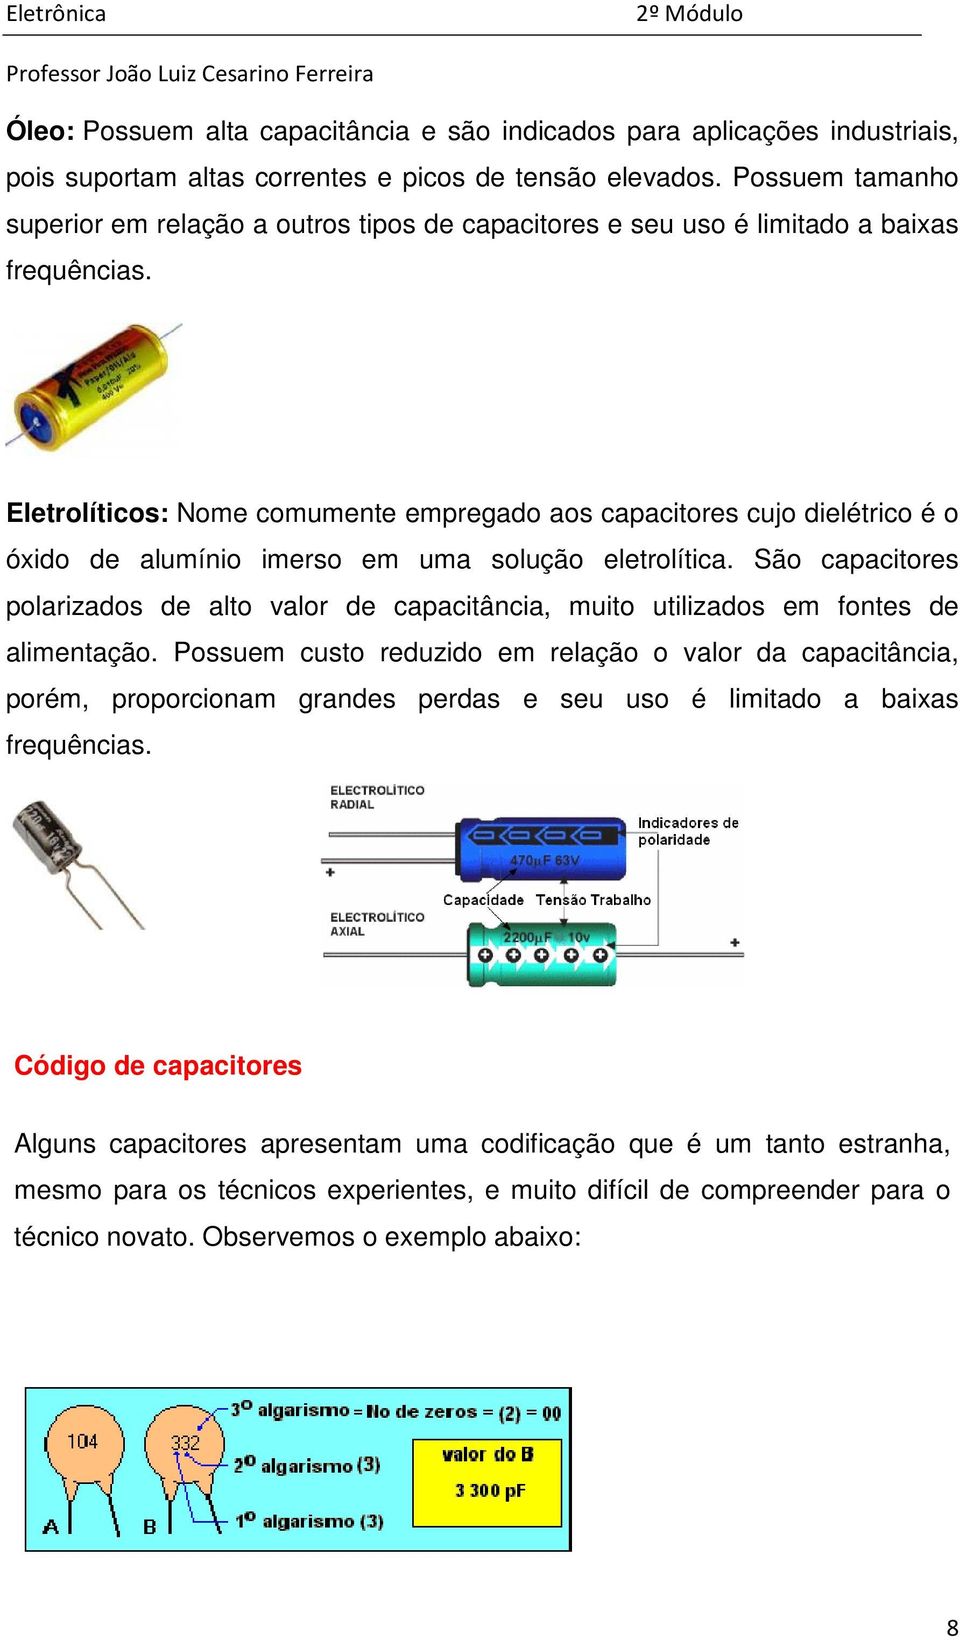 Eletrolíticos: Nome comumente empregado aos capacitores cujo dielétrico é o óxido de alumínio imerso em uma solução eletrolítica.